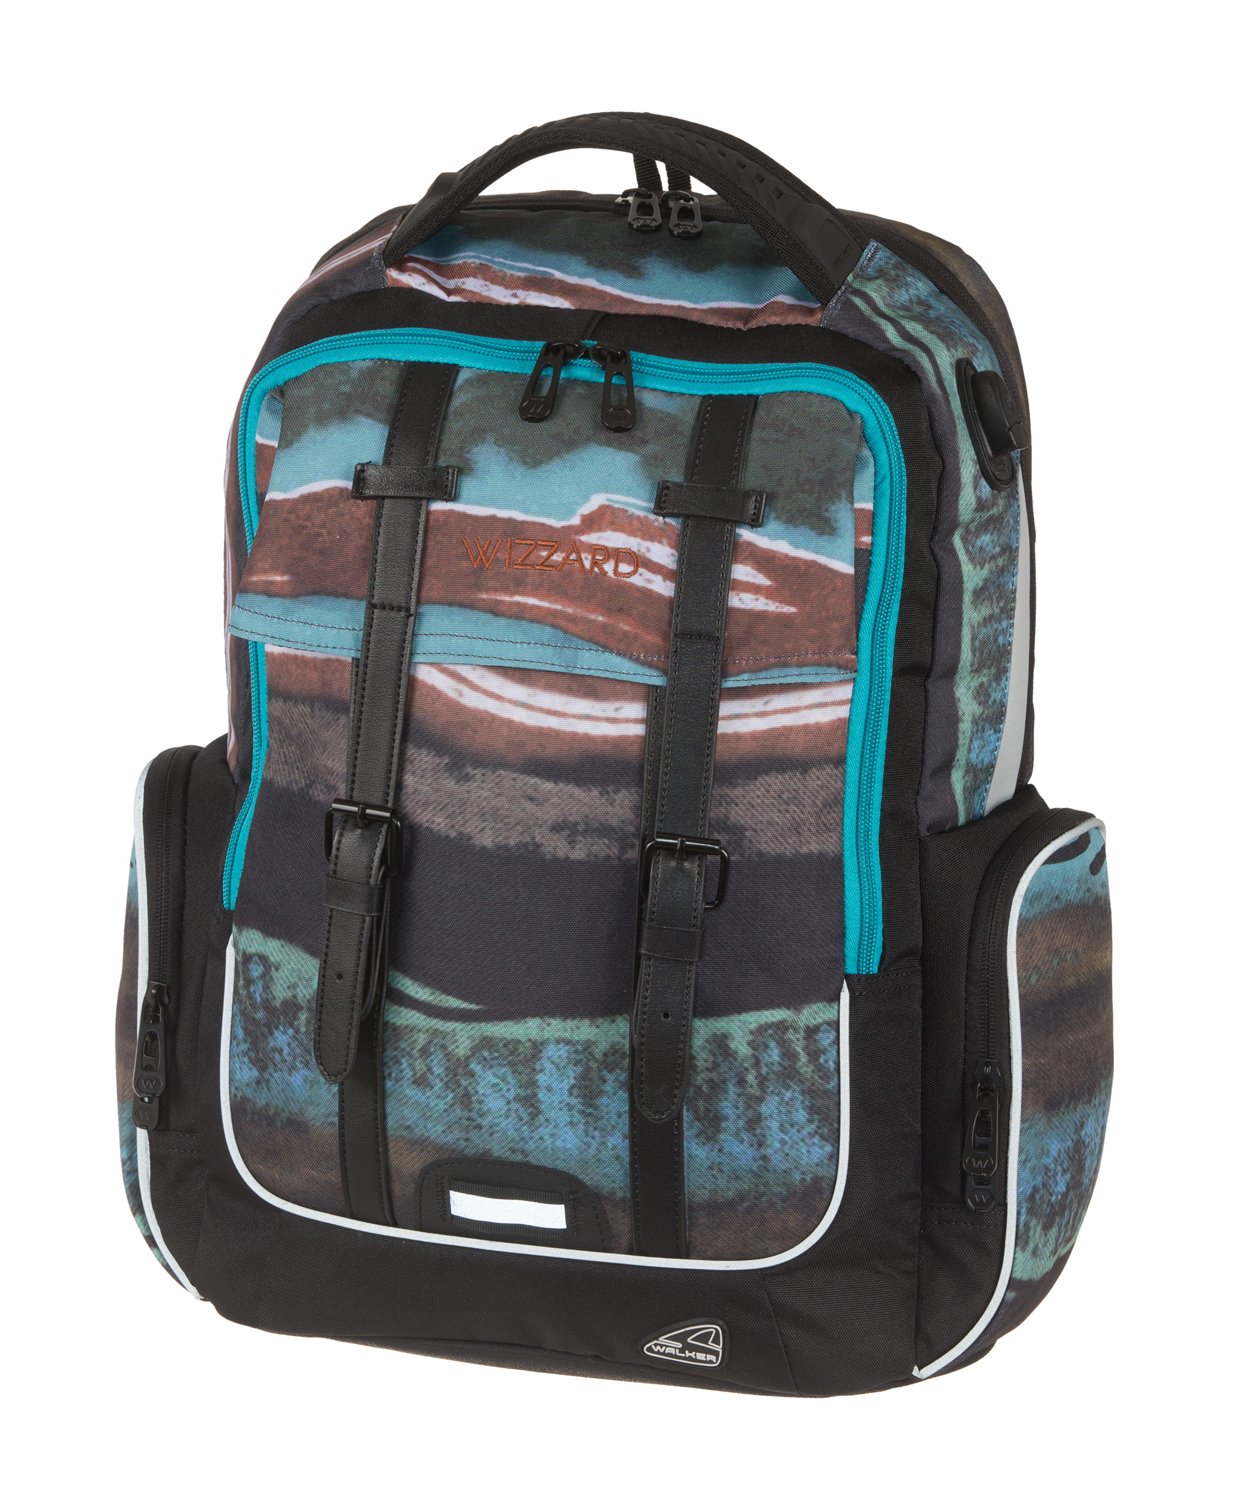 Walker 2018 Children’s Backpack, 46 cm, 29 liters, Multicolour (Blue ...